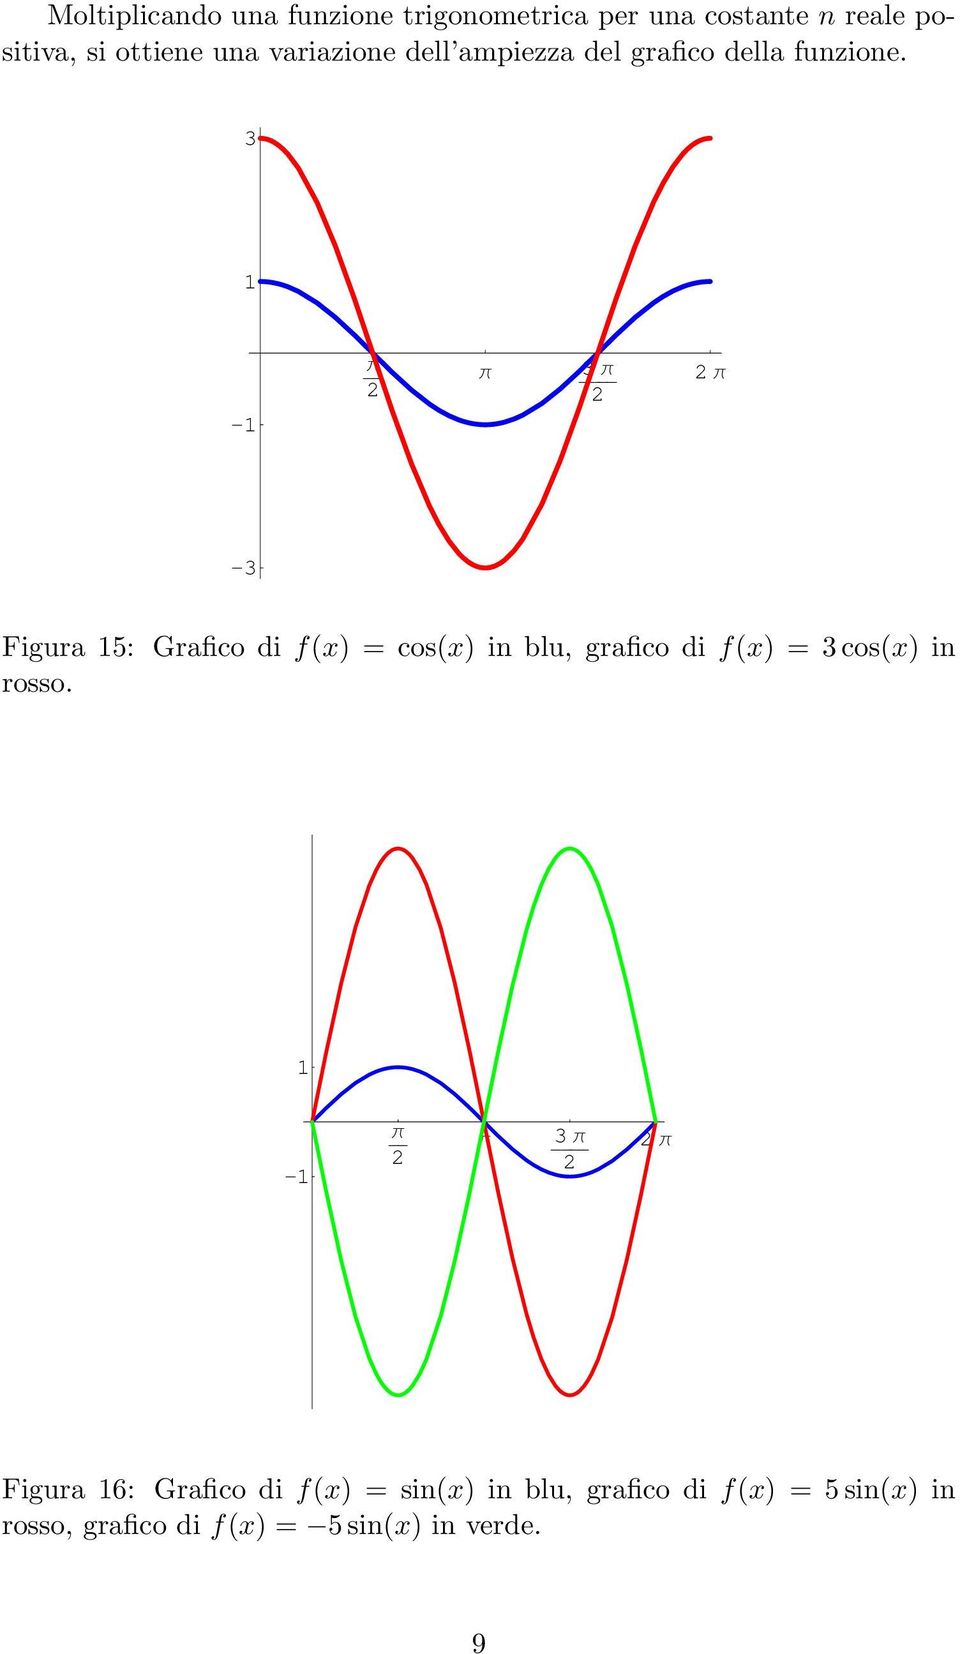 3-3 -3 Figura 5: Grafico di f(x) = cos(x) in blu, grafico di f(x) = 3 cos(x) in rosso.